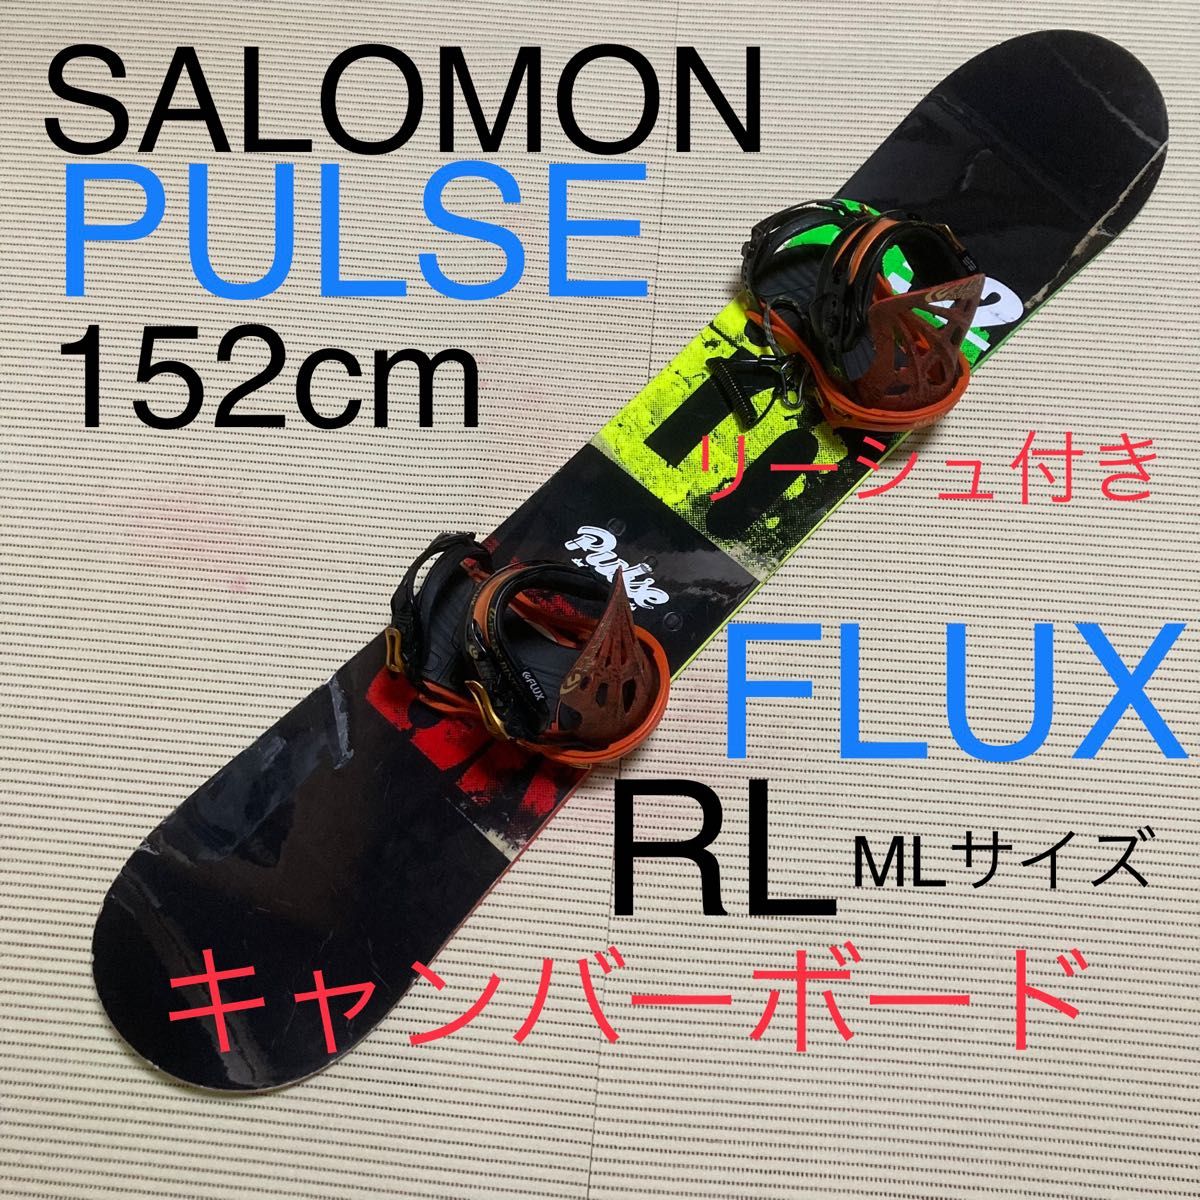 SALOMON PLUSE ボード と FLUX RLビンディングとリーシュのセット